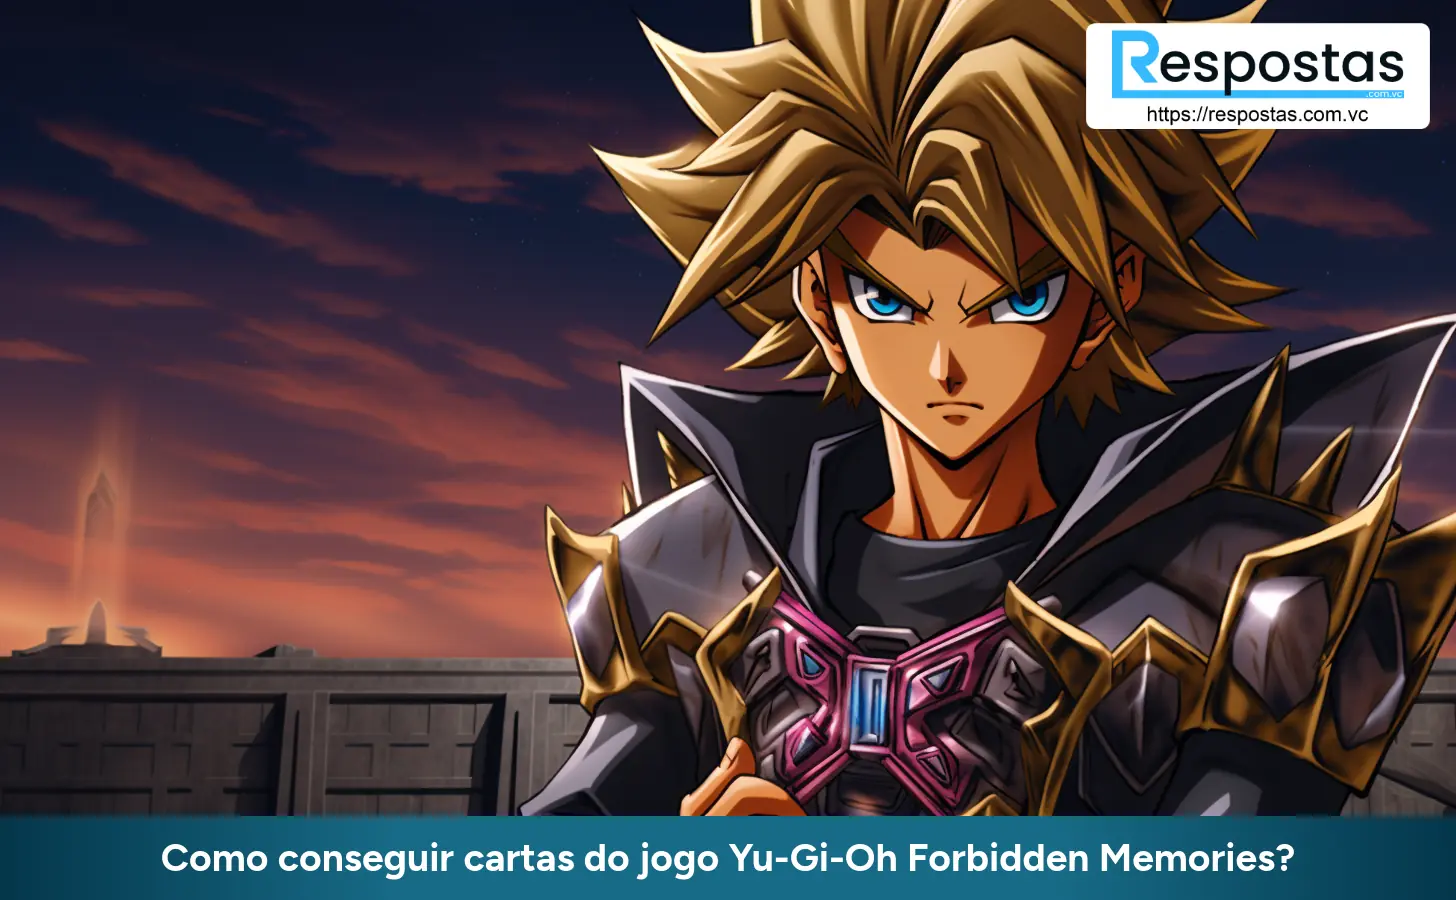 Como conseguir cartas do jogo Yu-Gi-Oh Forbidden Memories?